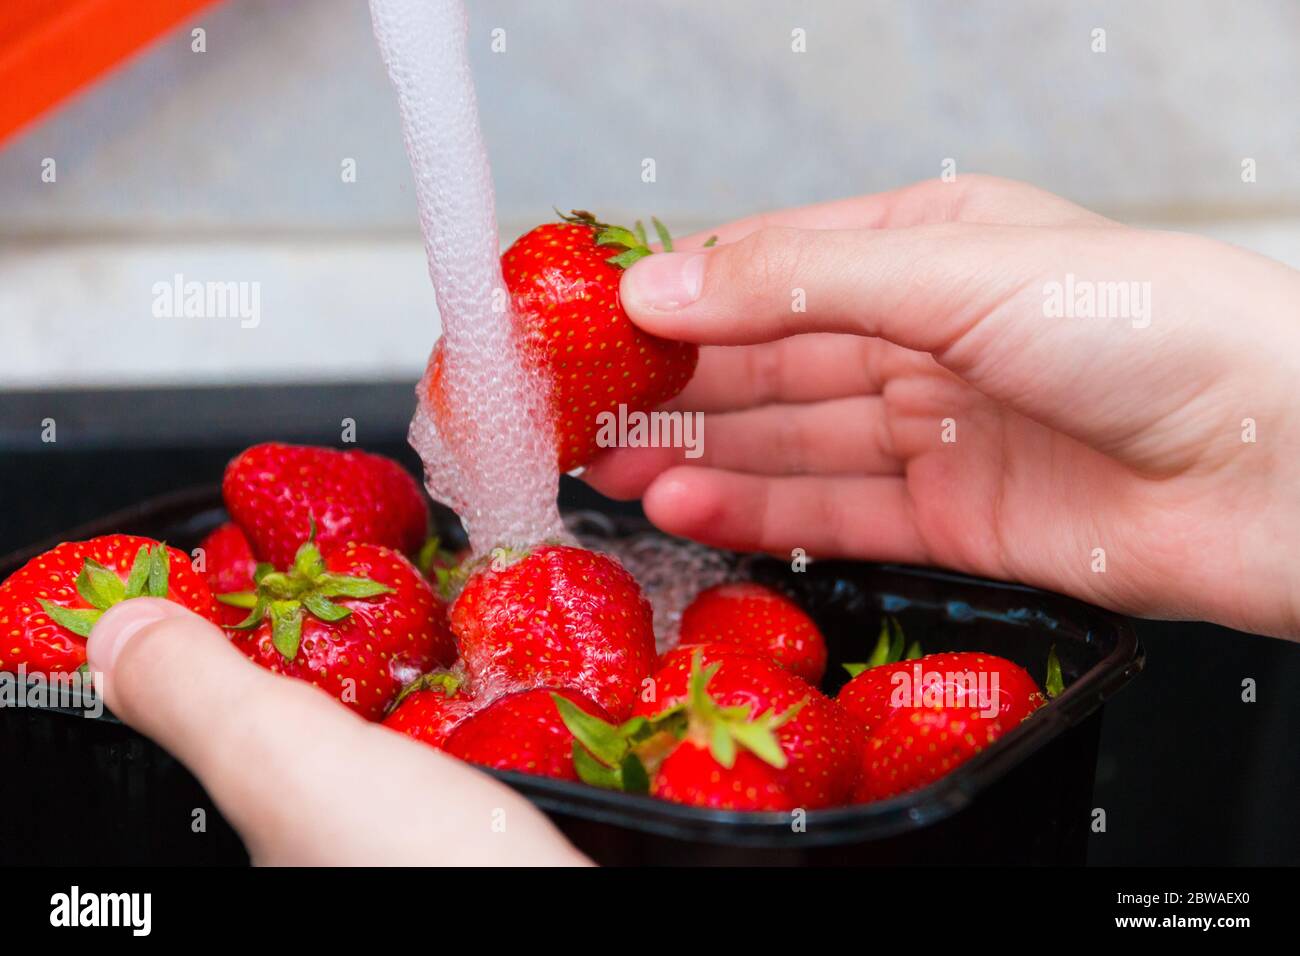 Erdbeeren waschen. Das Mädchen wäscht die reifen Erdbeeren unter einem  starken Wasserstrahl, waschen die Erdbeeren gründlich vor dem Essen.  Selektiv Stockfotografie - Alamy